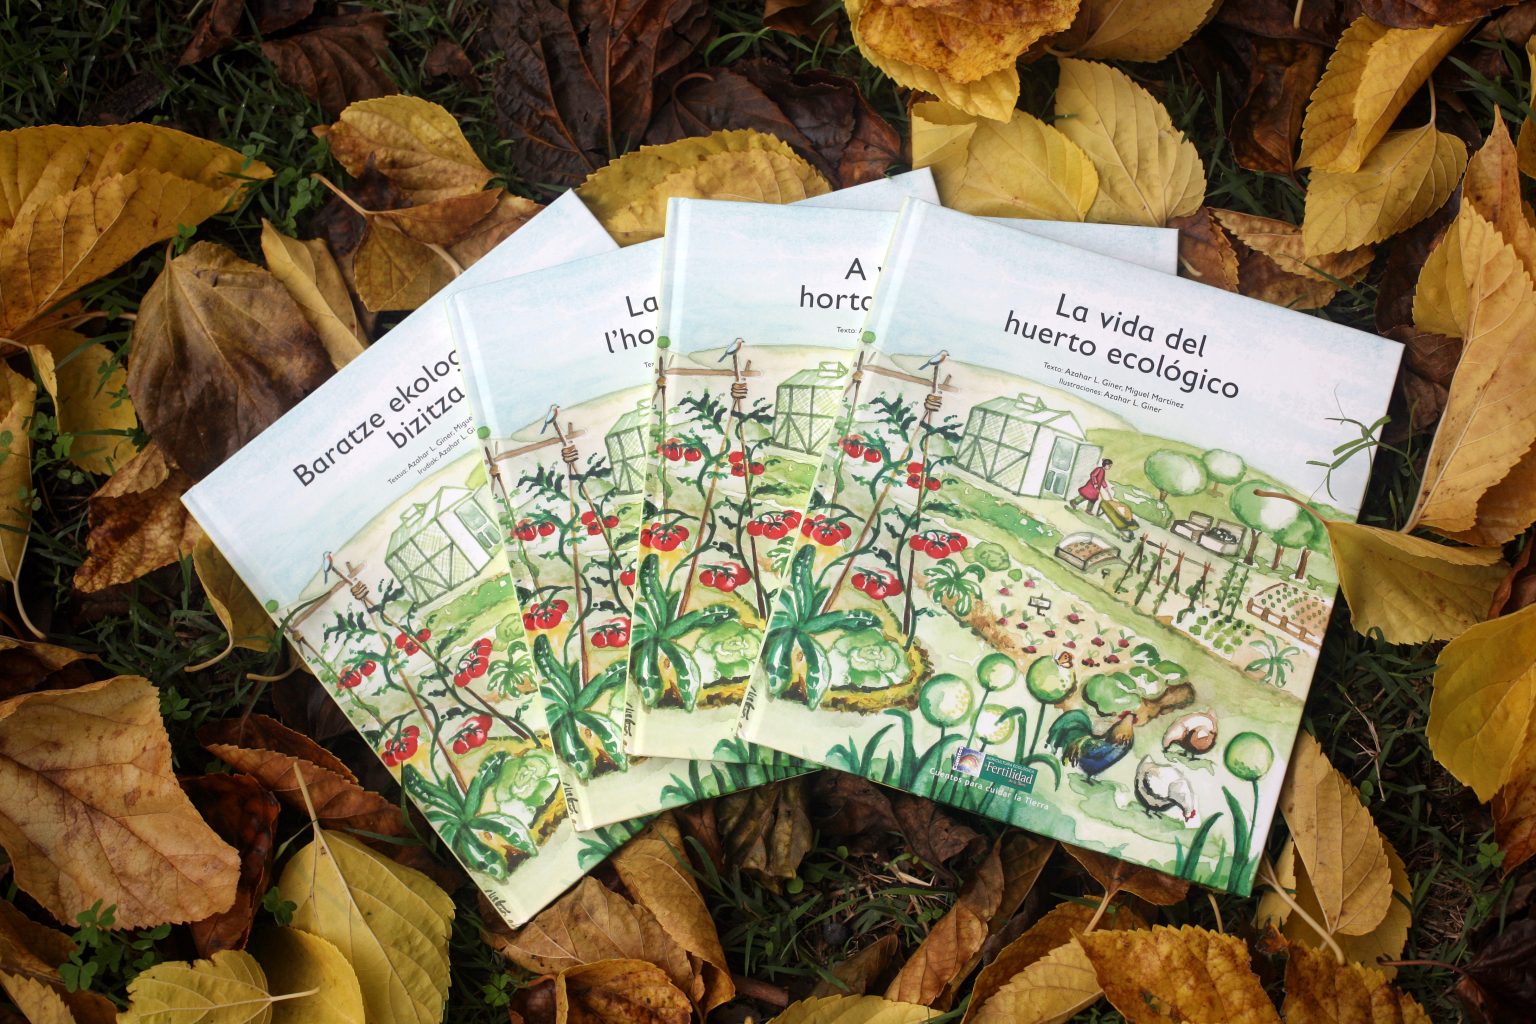 Portada del libro ilustrado La vida del huerto ecológico por Azahar Giner y publicado por la editorial La fertilidad de la tierra.